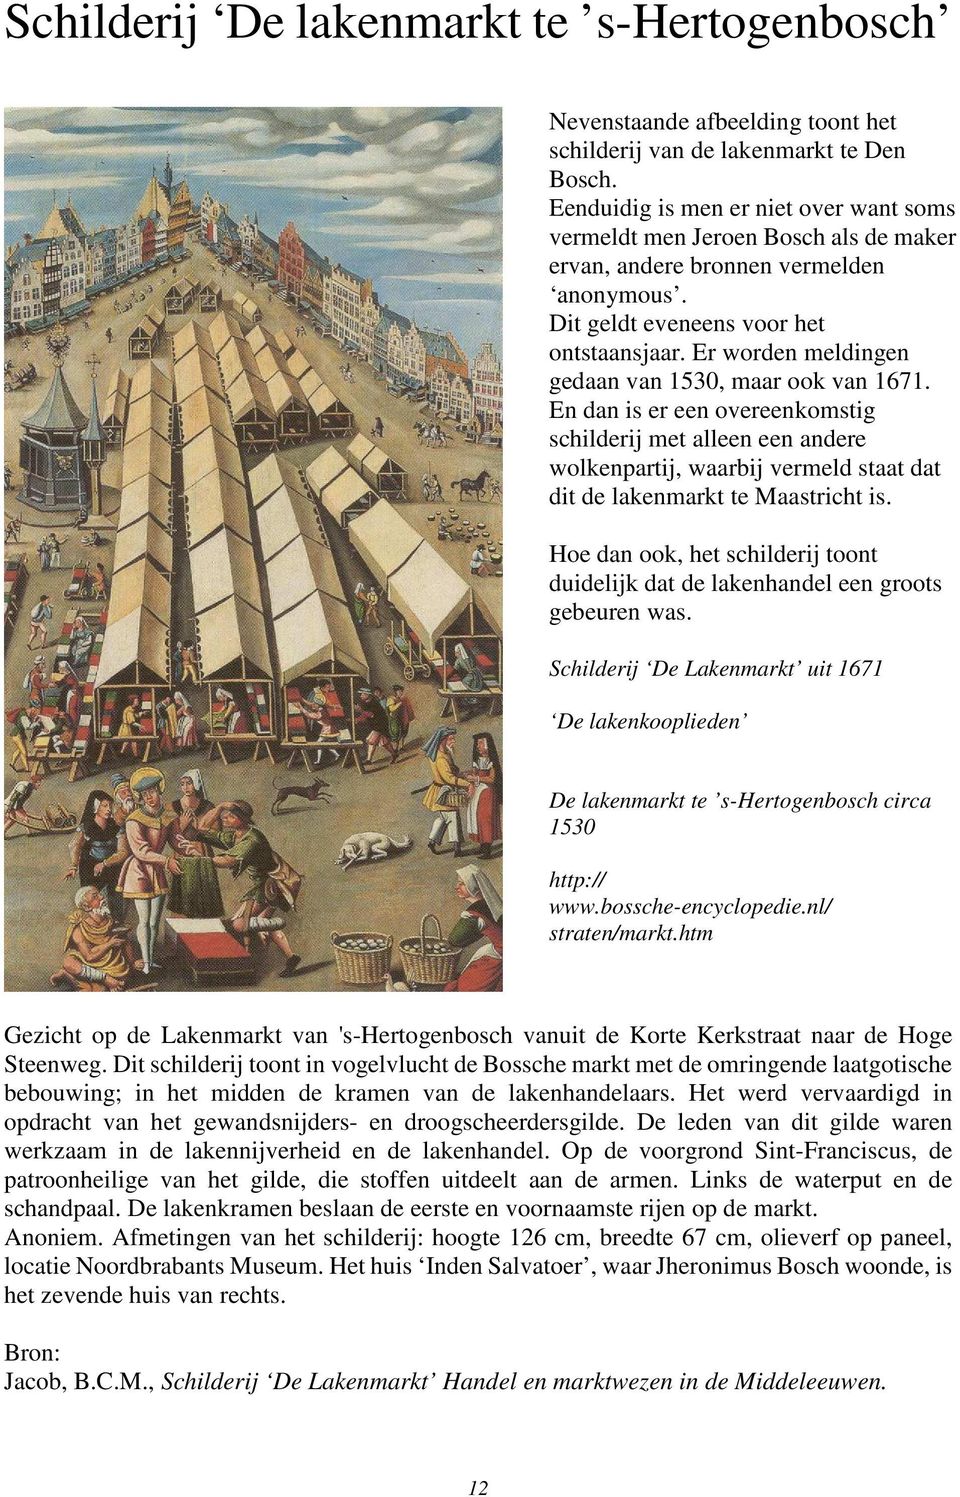 Er worden meldingen gedaan van 1530, maar ook van 1671. En dan is er een overeenkomstig schilderij met alleen een andere wolkenpartij, waarbij vermeld staat dat dit de lakenmarkt te Maastricht is.